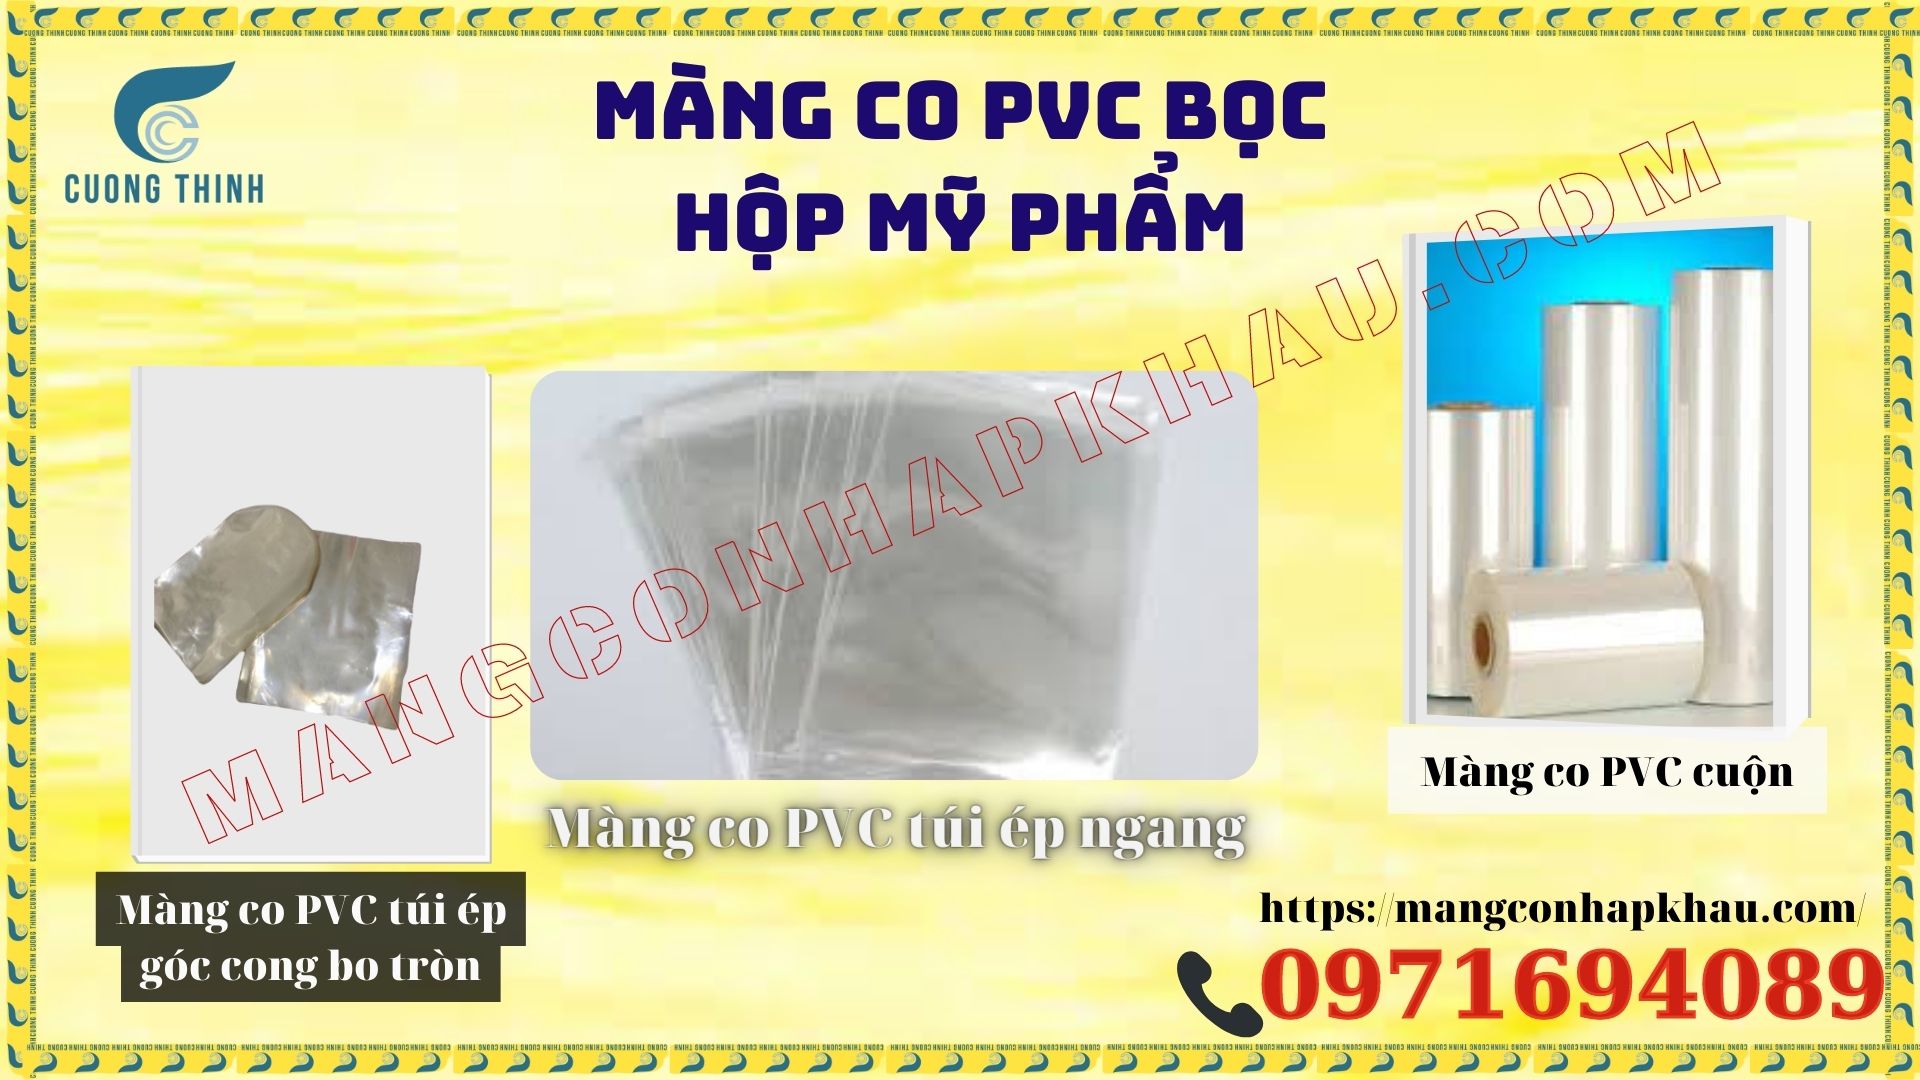 Các loại hình màng co PVC bọc hộp mỹ phẩm